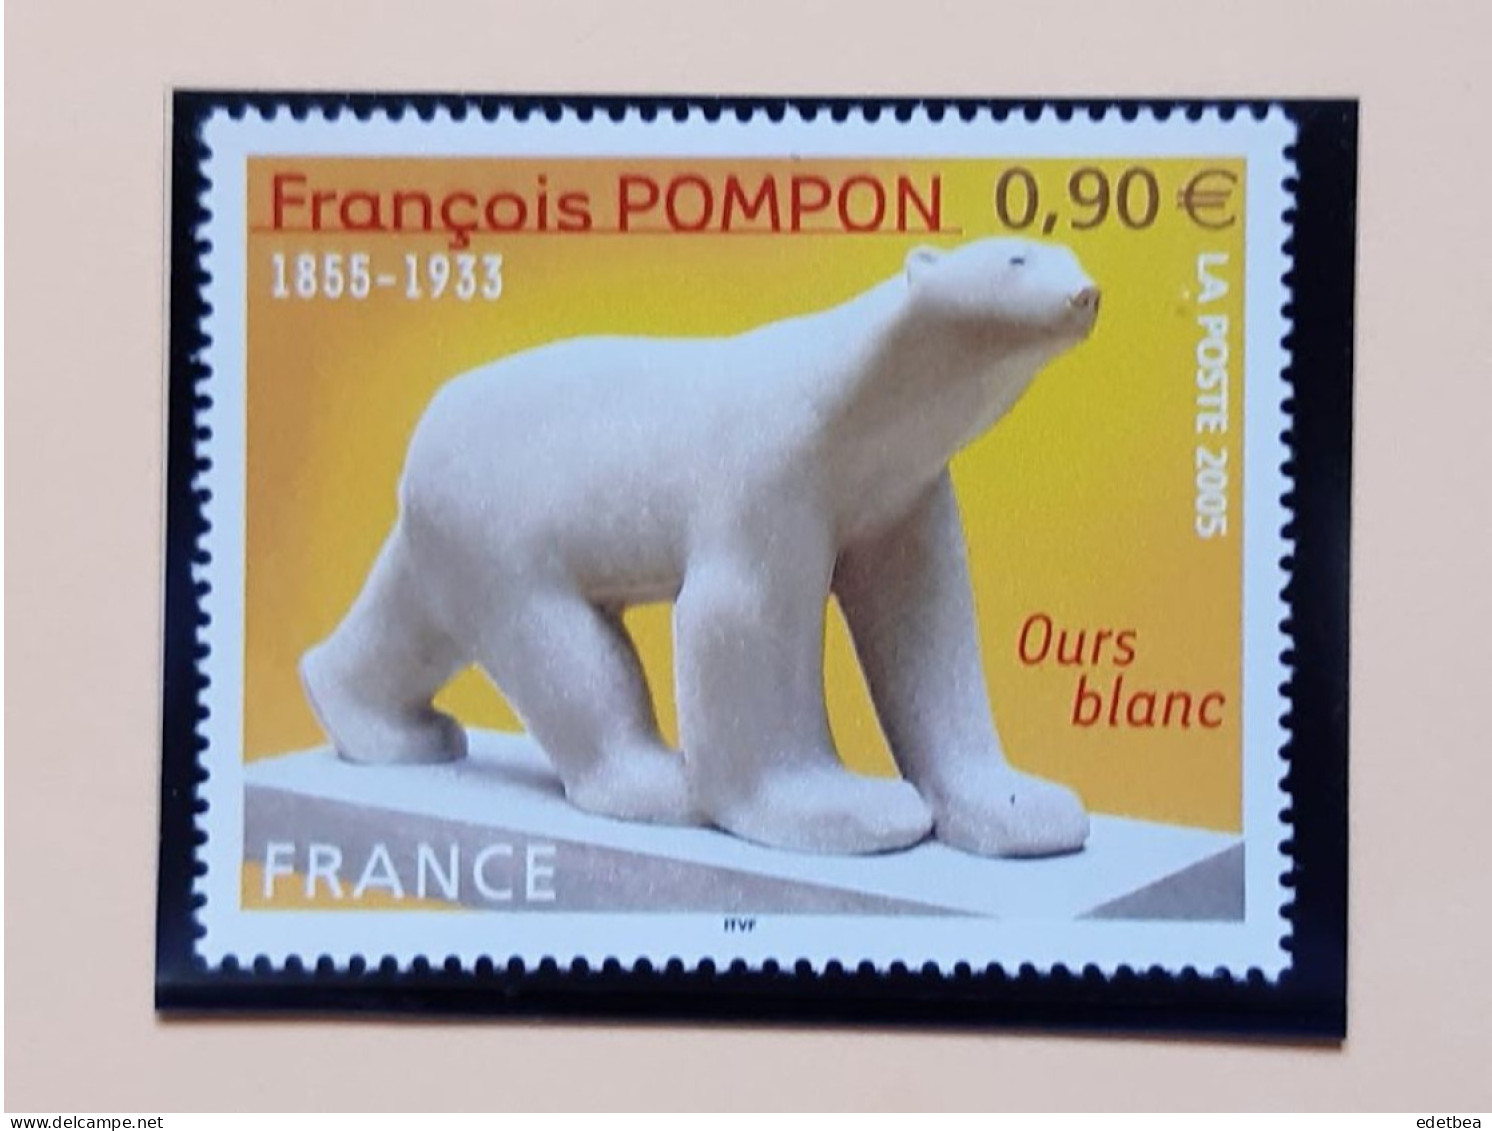 Timbre - France 2005 – N° 3806 – Oeuvre De François POMPON : Ours Blanc -Etat : Neuf - Nuovi